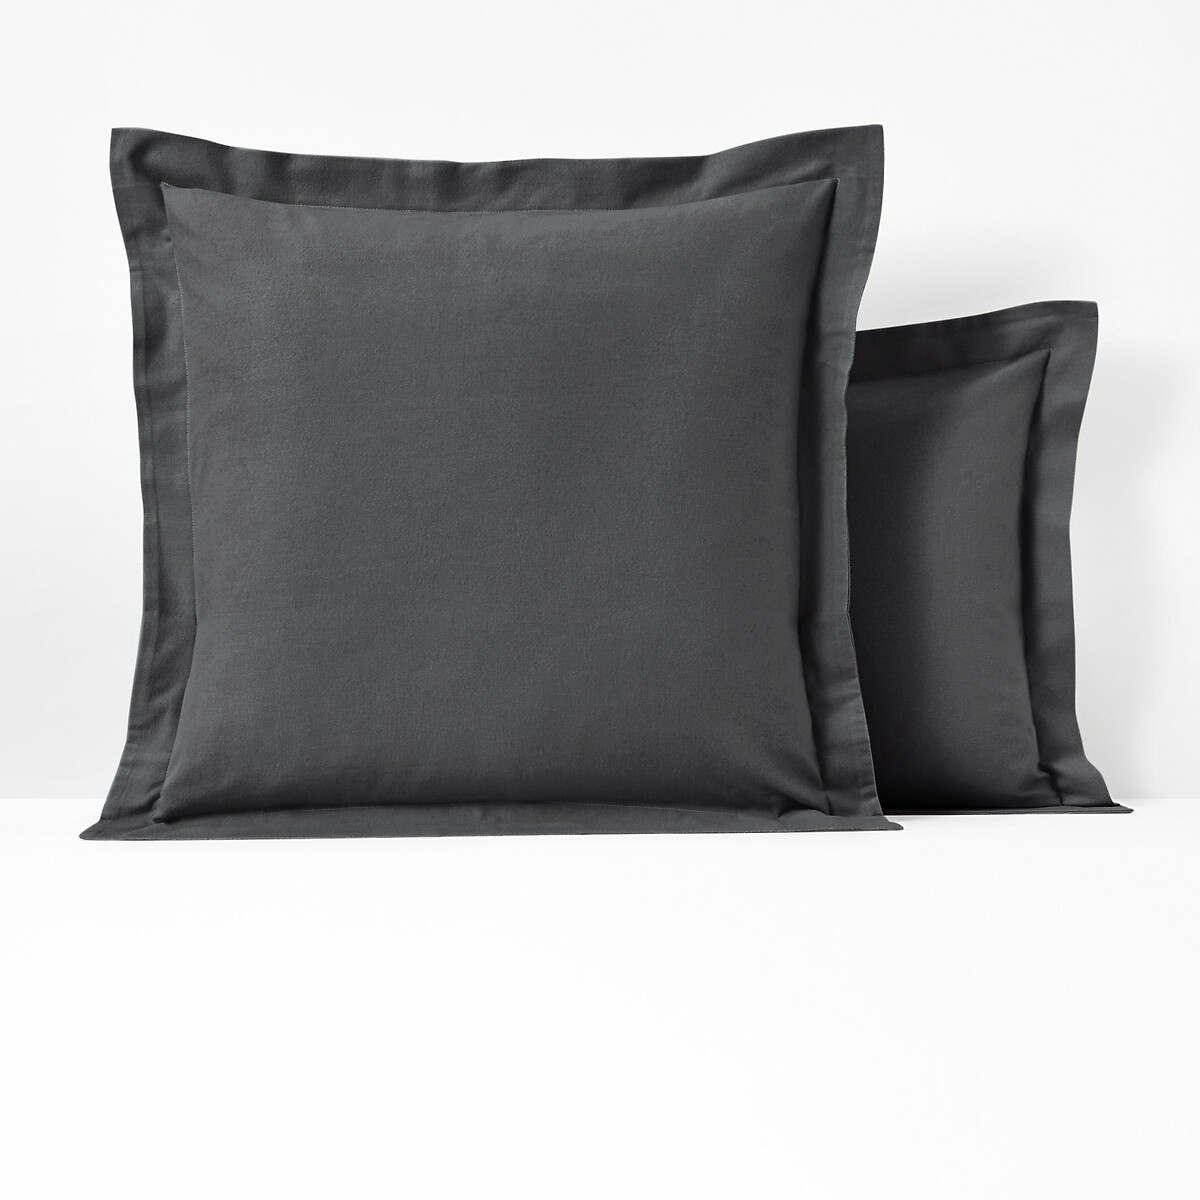 Чехол на подушку или на валик из фланели Scenario 85 x 185 см серый цена и фото